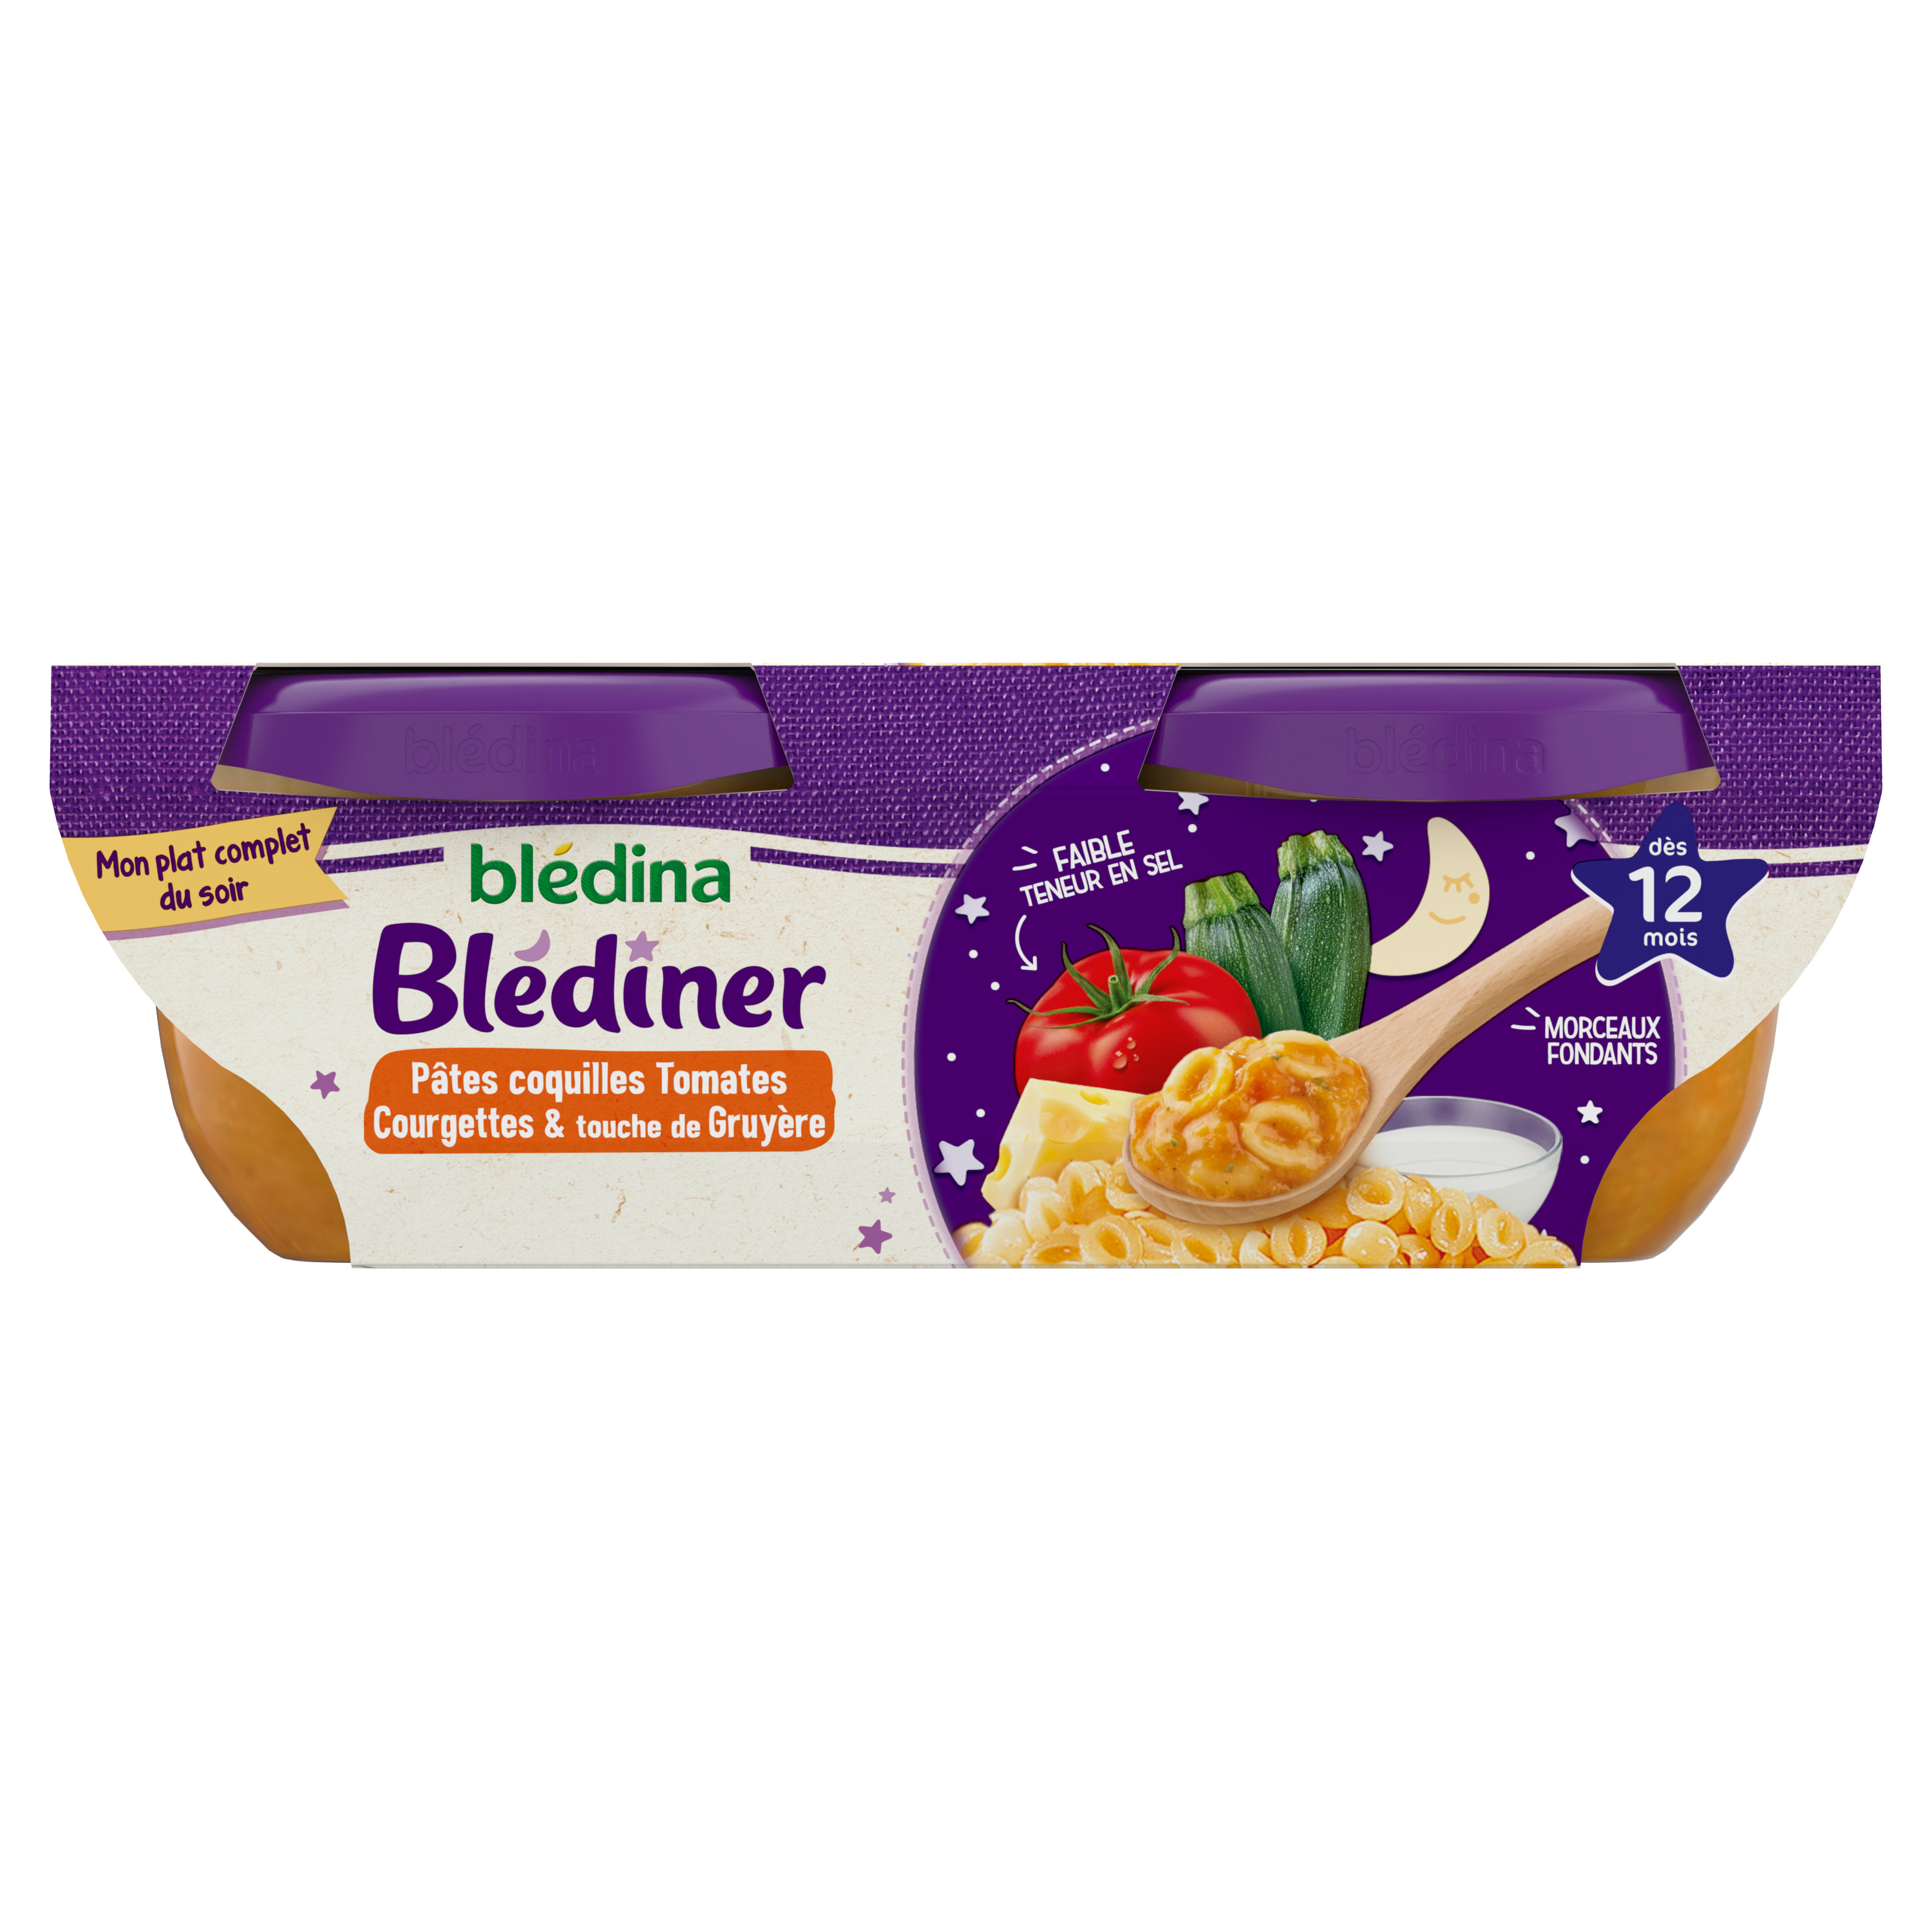 Blédidej Croissance Chocolat gourmand dès 12 mois BLEDINA : Comparateur,  Avis, Prix